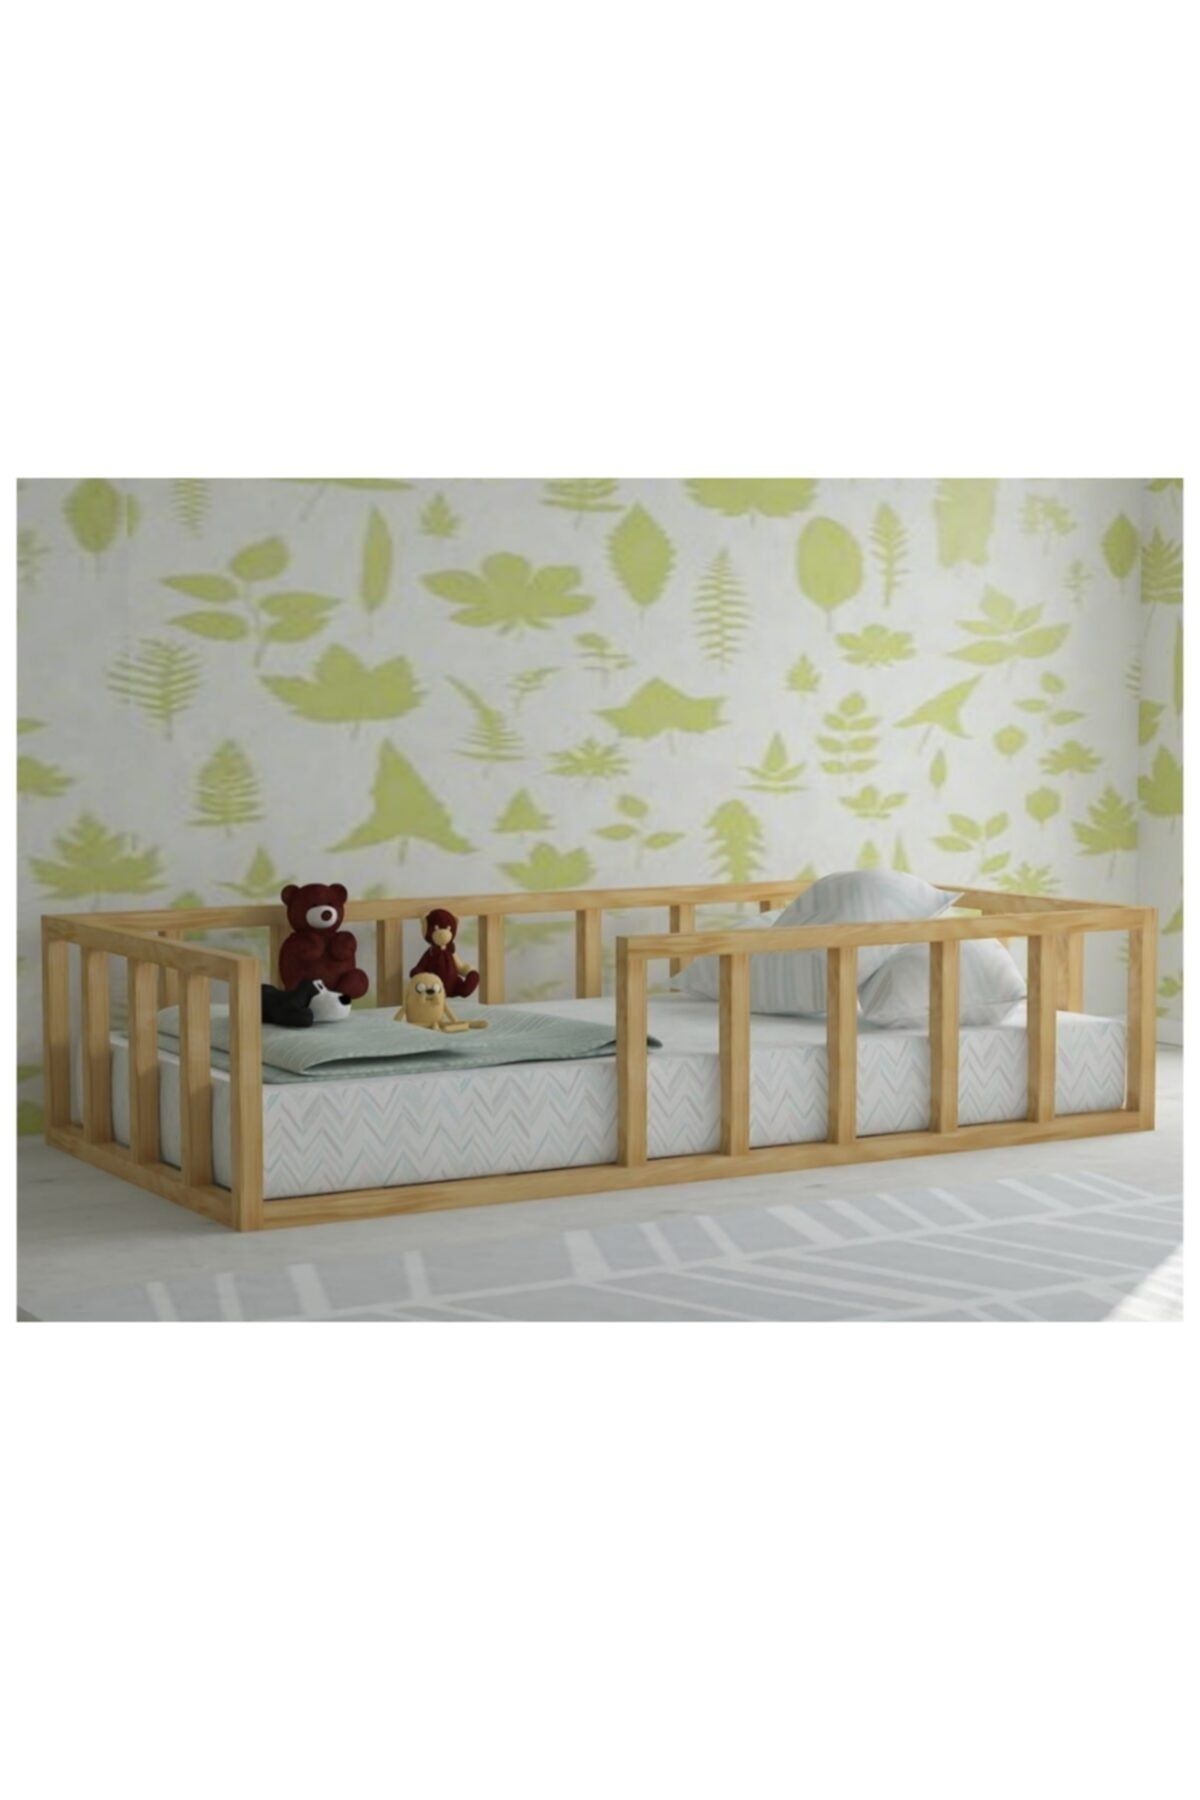 Ceestore Ahşap Montessori Yatak Bebek Beşik Çocuk Karyolası 90x190